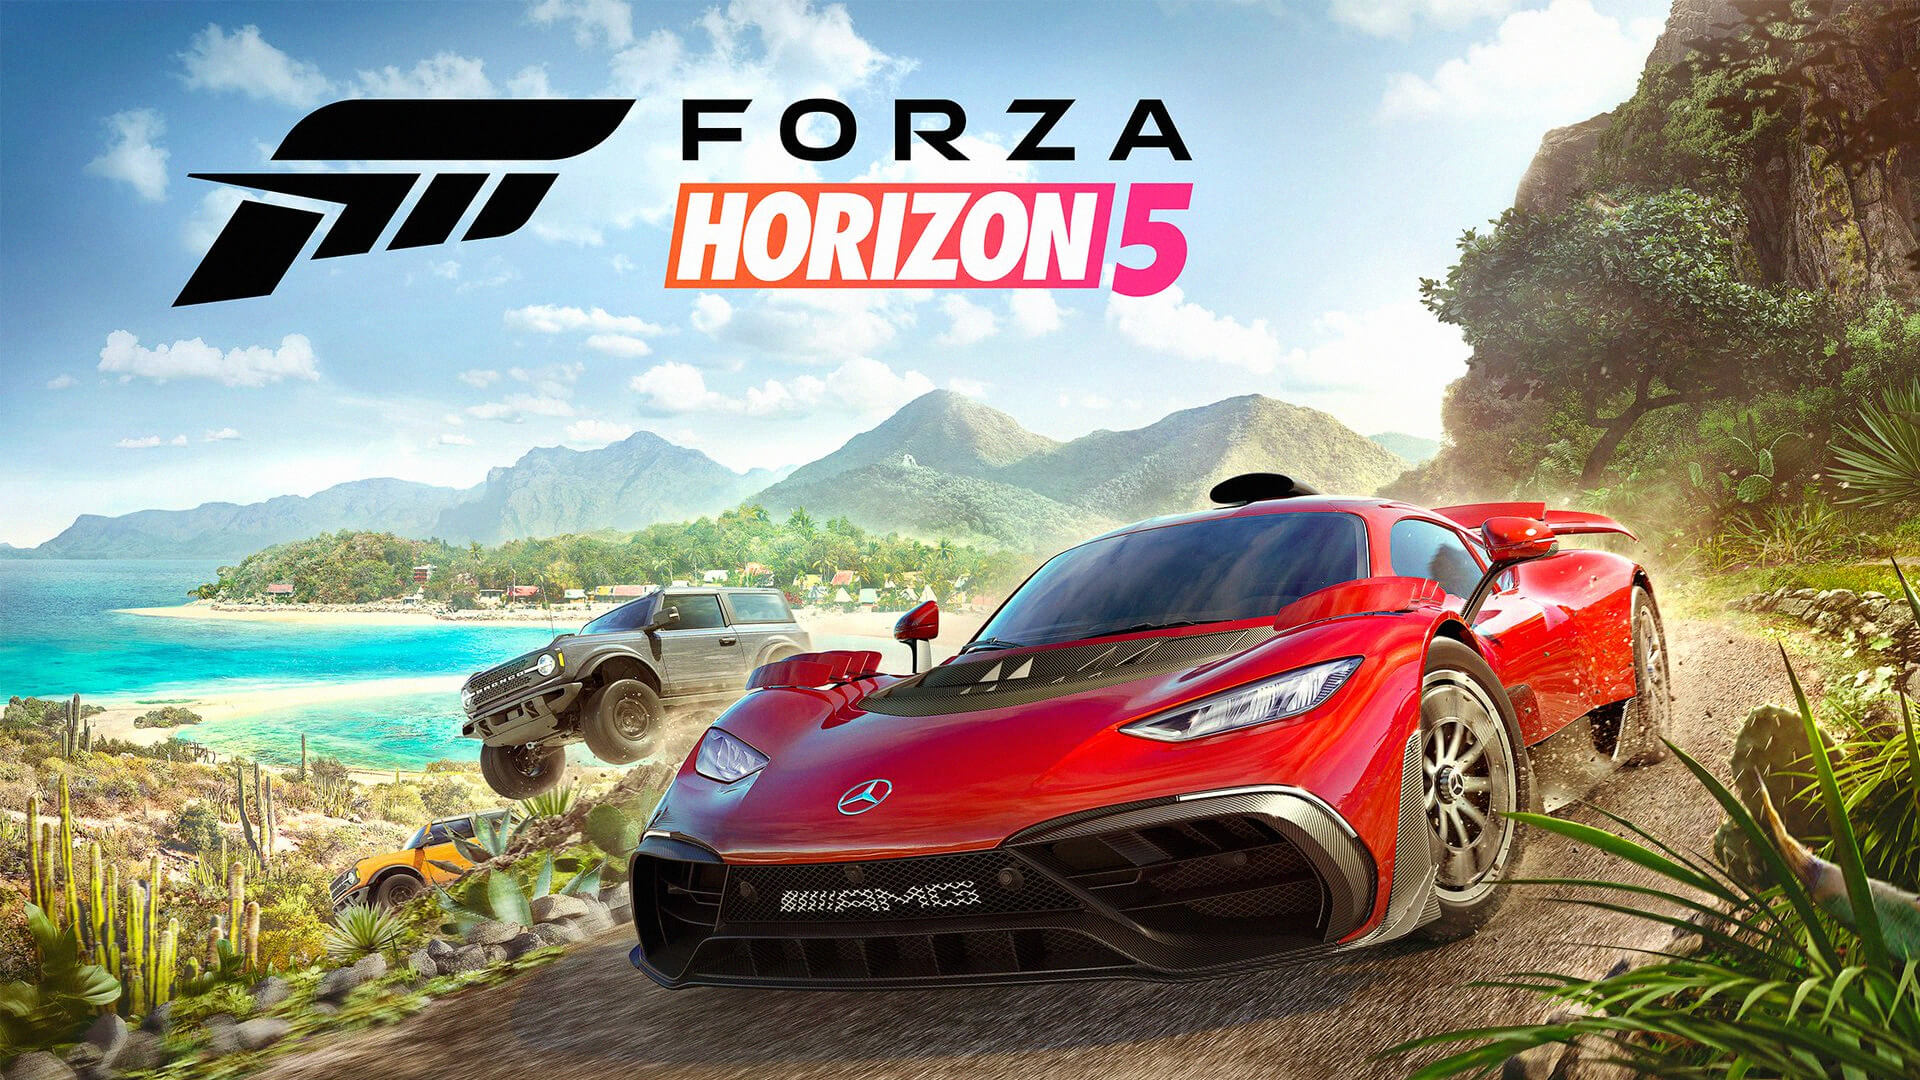 Forza Horizon 5 já está disponível para pre-download no Xbox One, Xbox Series S/X e WIndows PC. O jogo será lançado no dia 9 de Novembro e dia 5 para quem tem o acesso antecipado